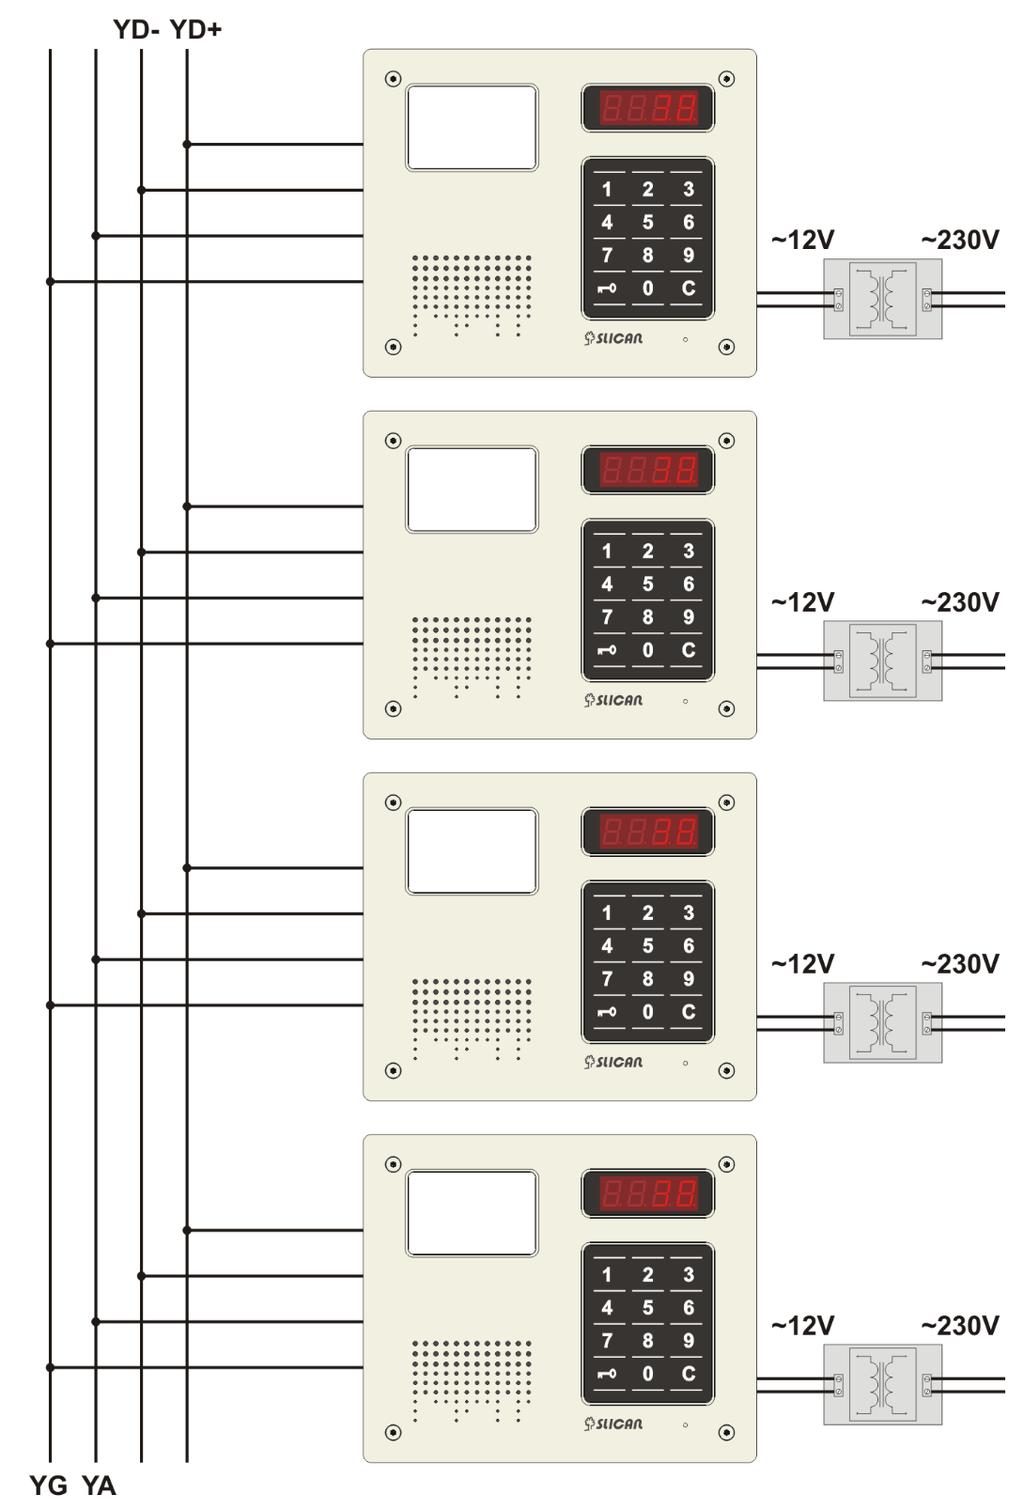 2.3.2 Instalacja sieci dla konfiguracji wielokasetowej (tryb YR) Magistrala YR (komunikacji między kasetami) składa się z czterech żył.